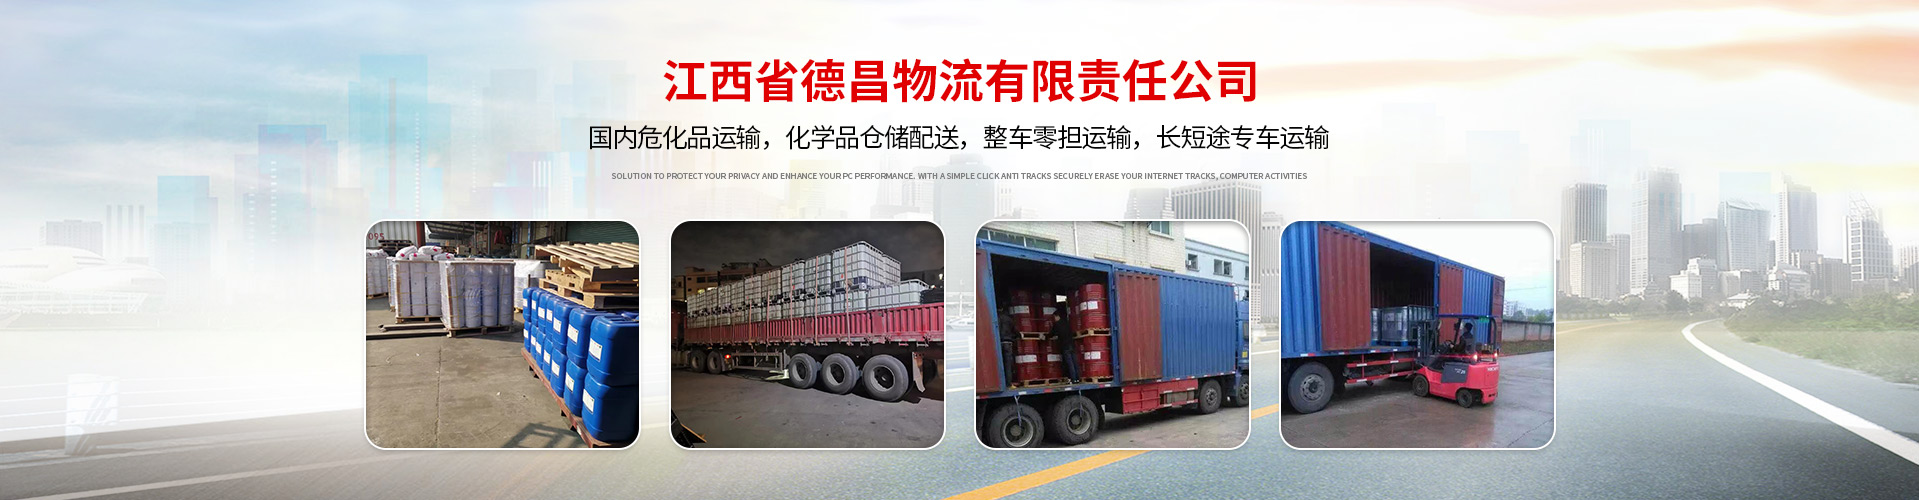 惠州至全国危险化学品运输公司 3-9类 整车零担运输 深耕化学品运输多年 专注专业